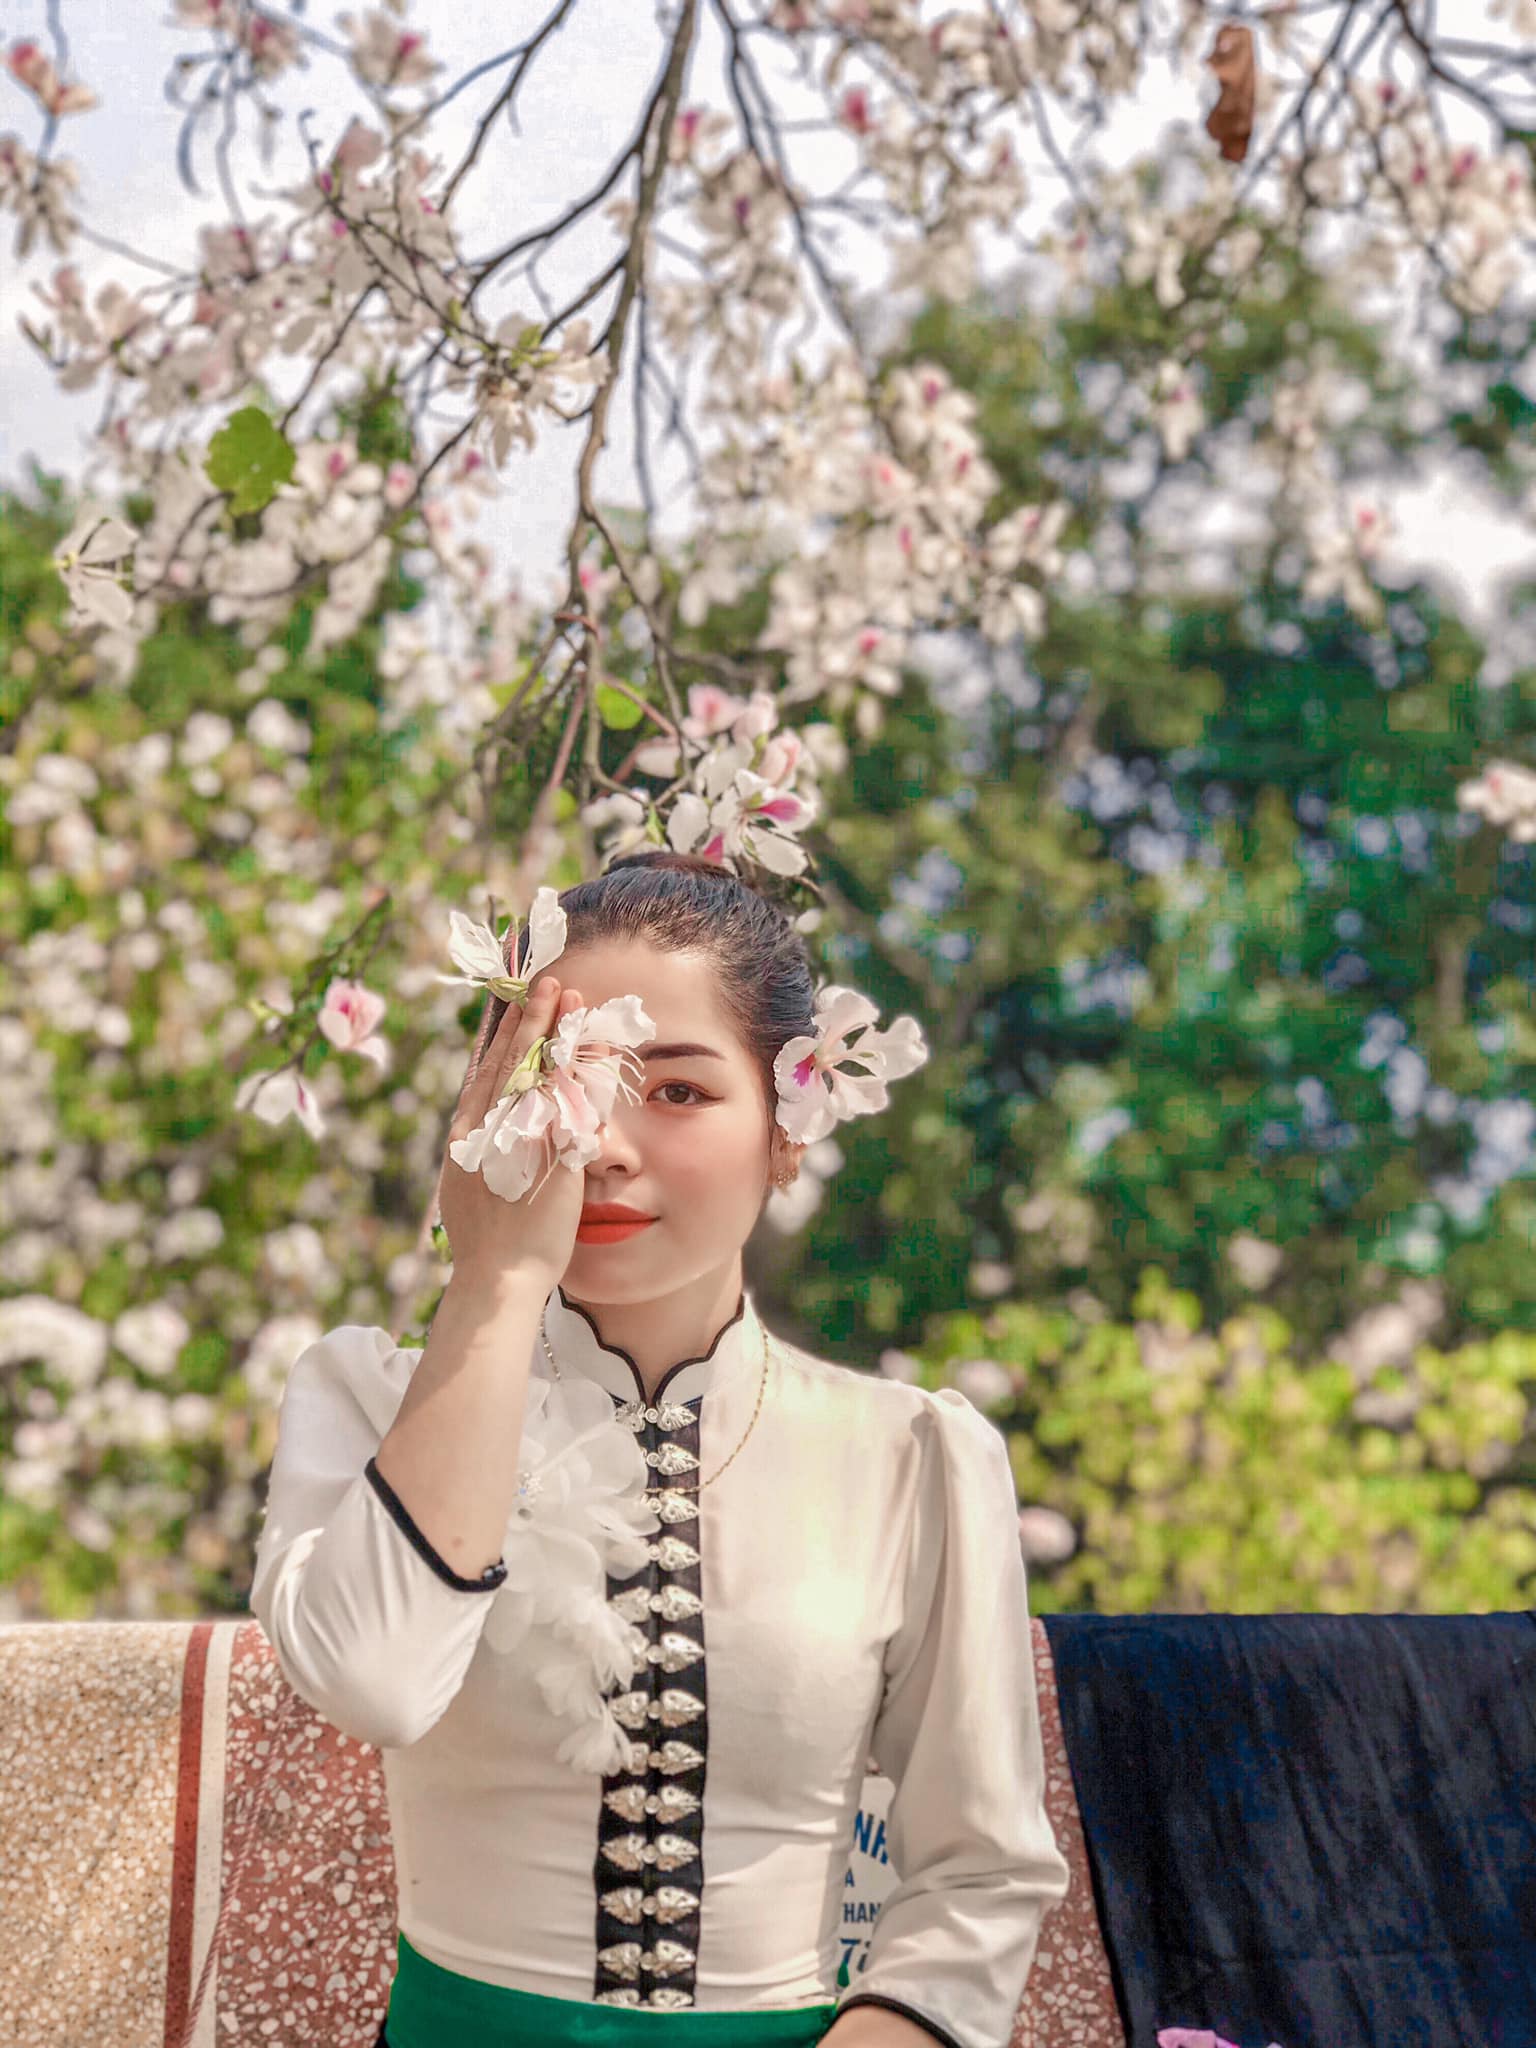 Ngất ngây trước vẻ đẹp Điện Biên mùa hoa ban nở lung linh nhất trong năm - ảnh 25